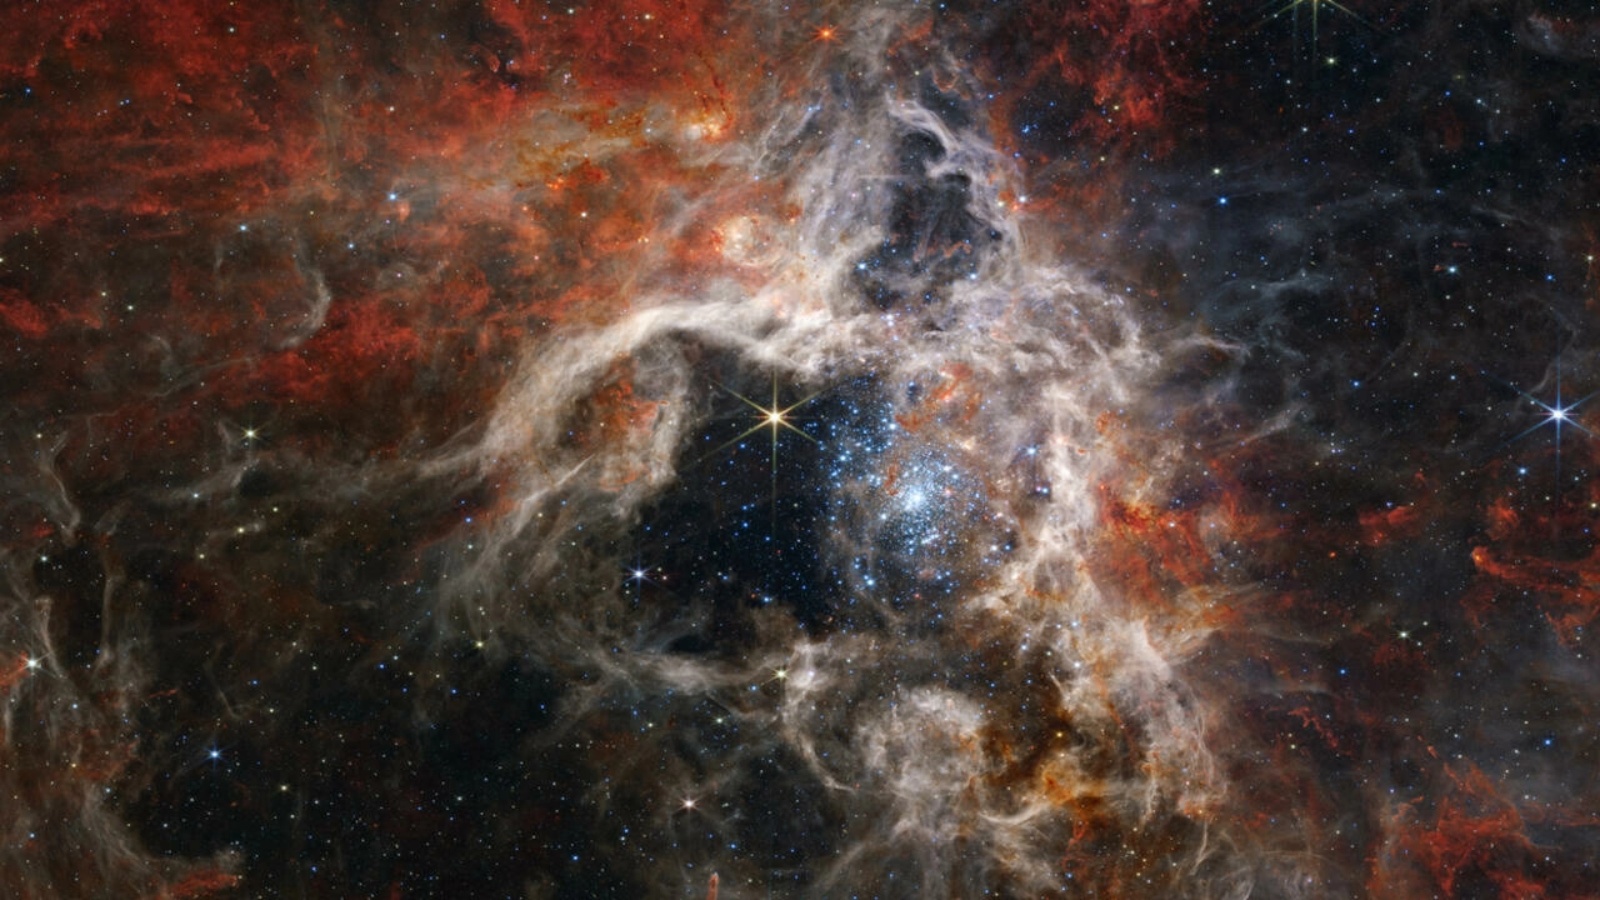 تُعرف منطقة الفضاء رسمياً باسم 30 دورادوس ، وتتميز بشعيراتها المتربة التي تشبه أرجل العنكبوت المشعر ، ولطالما كانت مفضلة لدى علماء الفلك المهتمين بتكوين النجوم